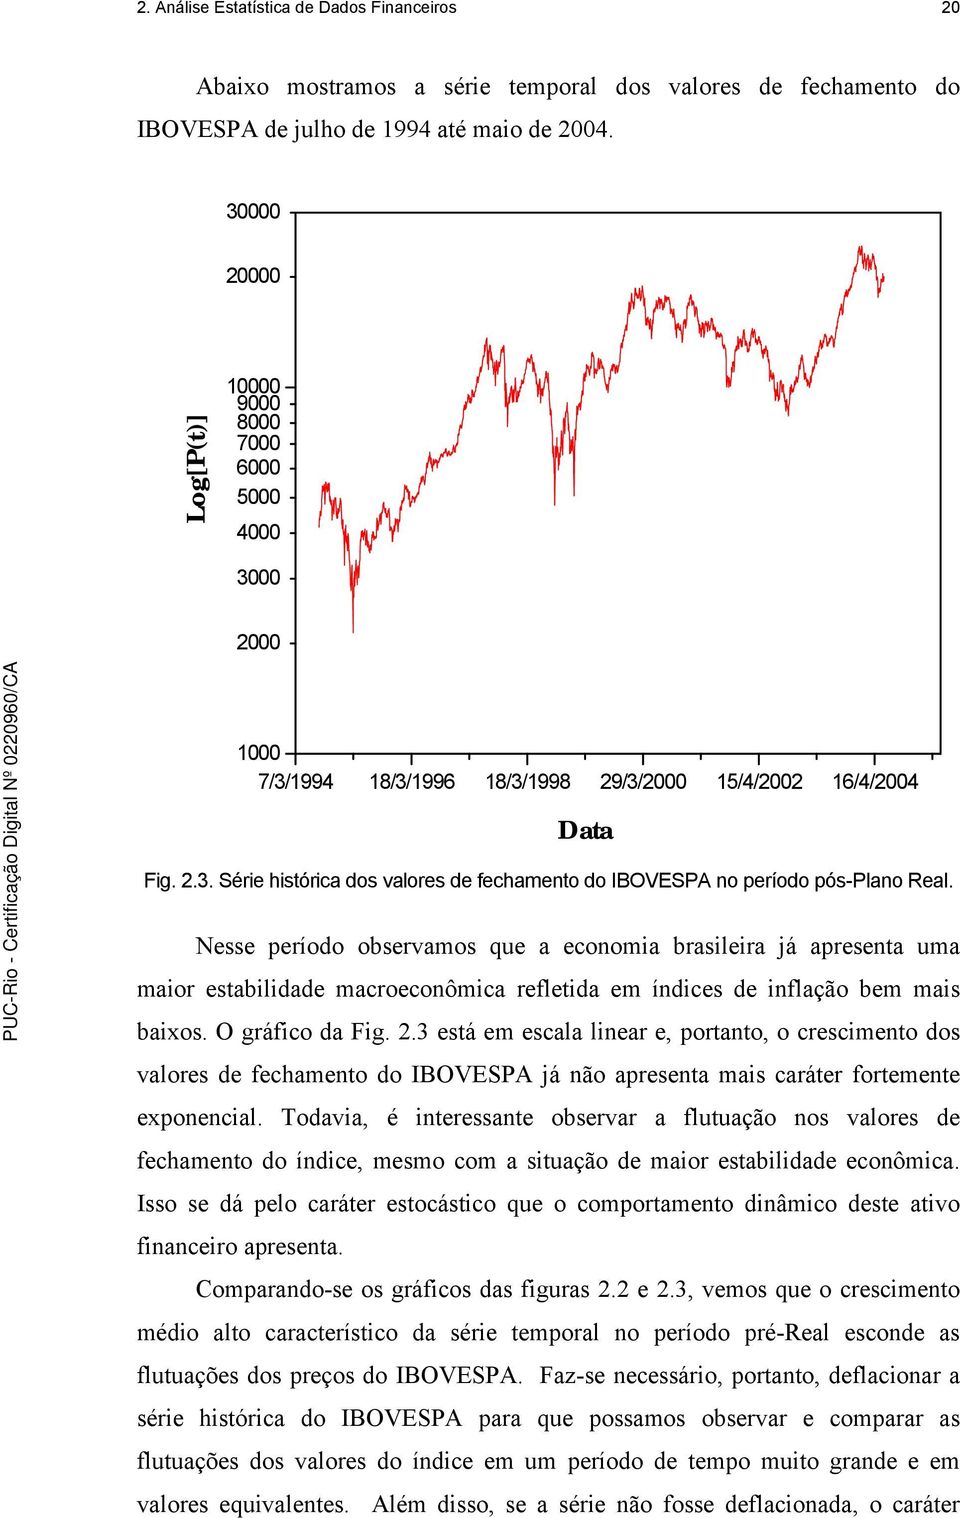 Nesse período observamos que a economia brasileira já apresenta uma maior estabilidade macroeconômica refletida em índices de inflação bem mais baixos. O gráfico da Fig. 2.